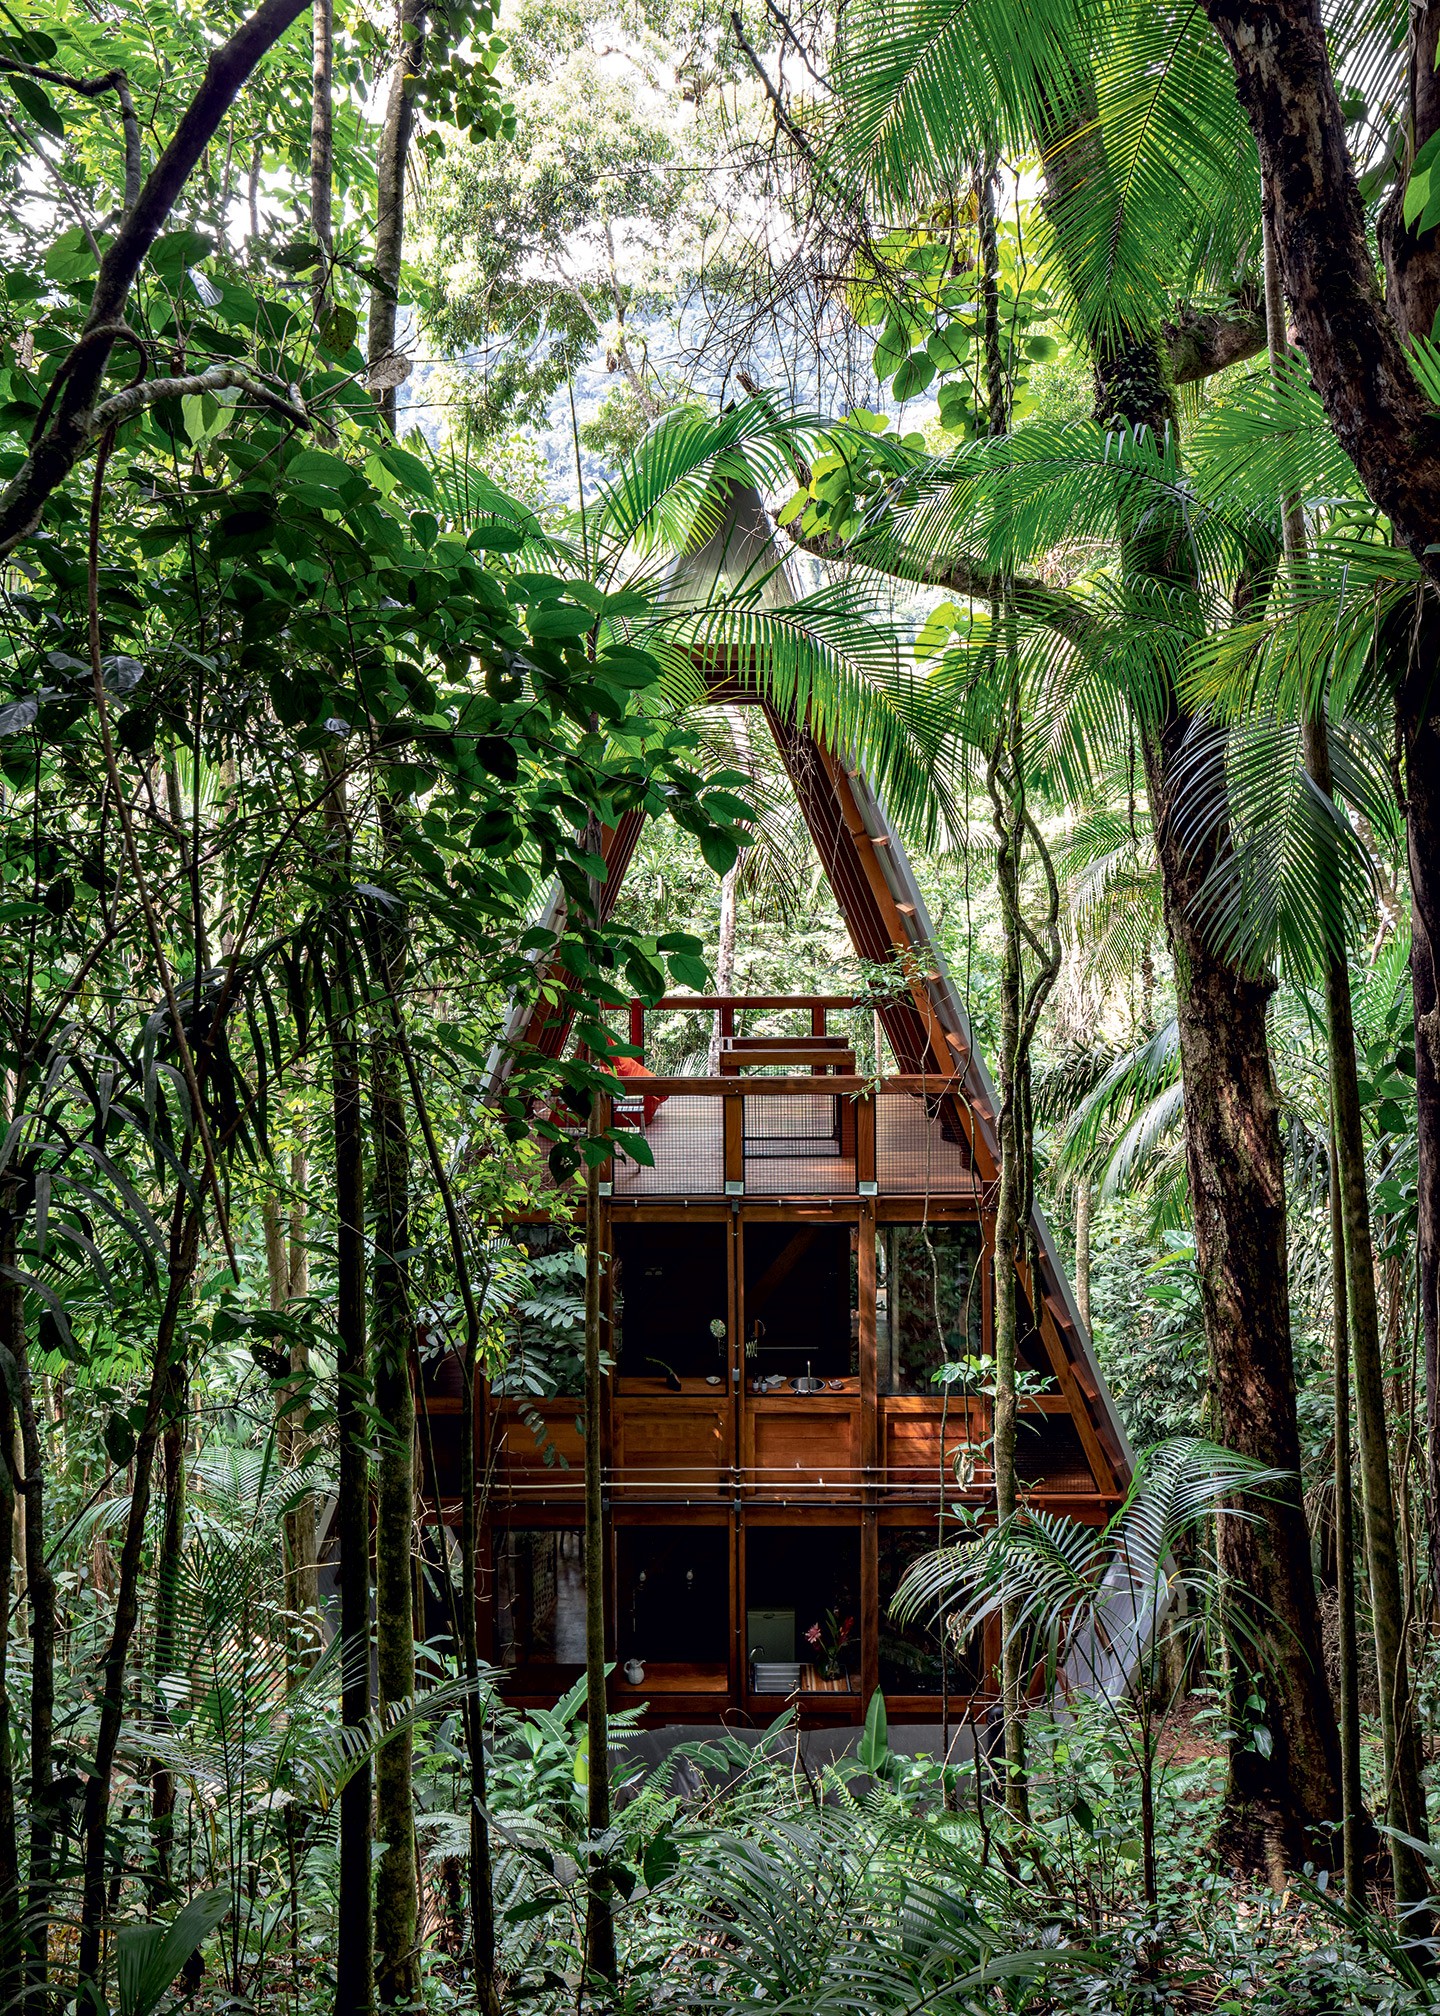 Casa imersa na floresta de Paraty aposta na biomimética e transforma a natureza em seu entorno (Foto: Fran Parente)